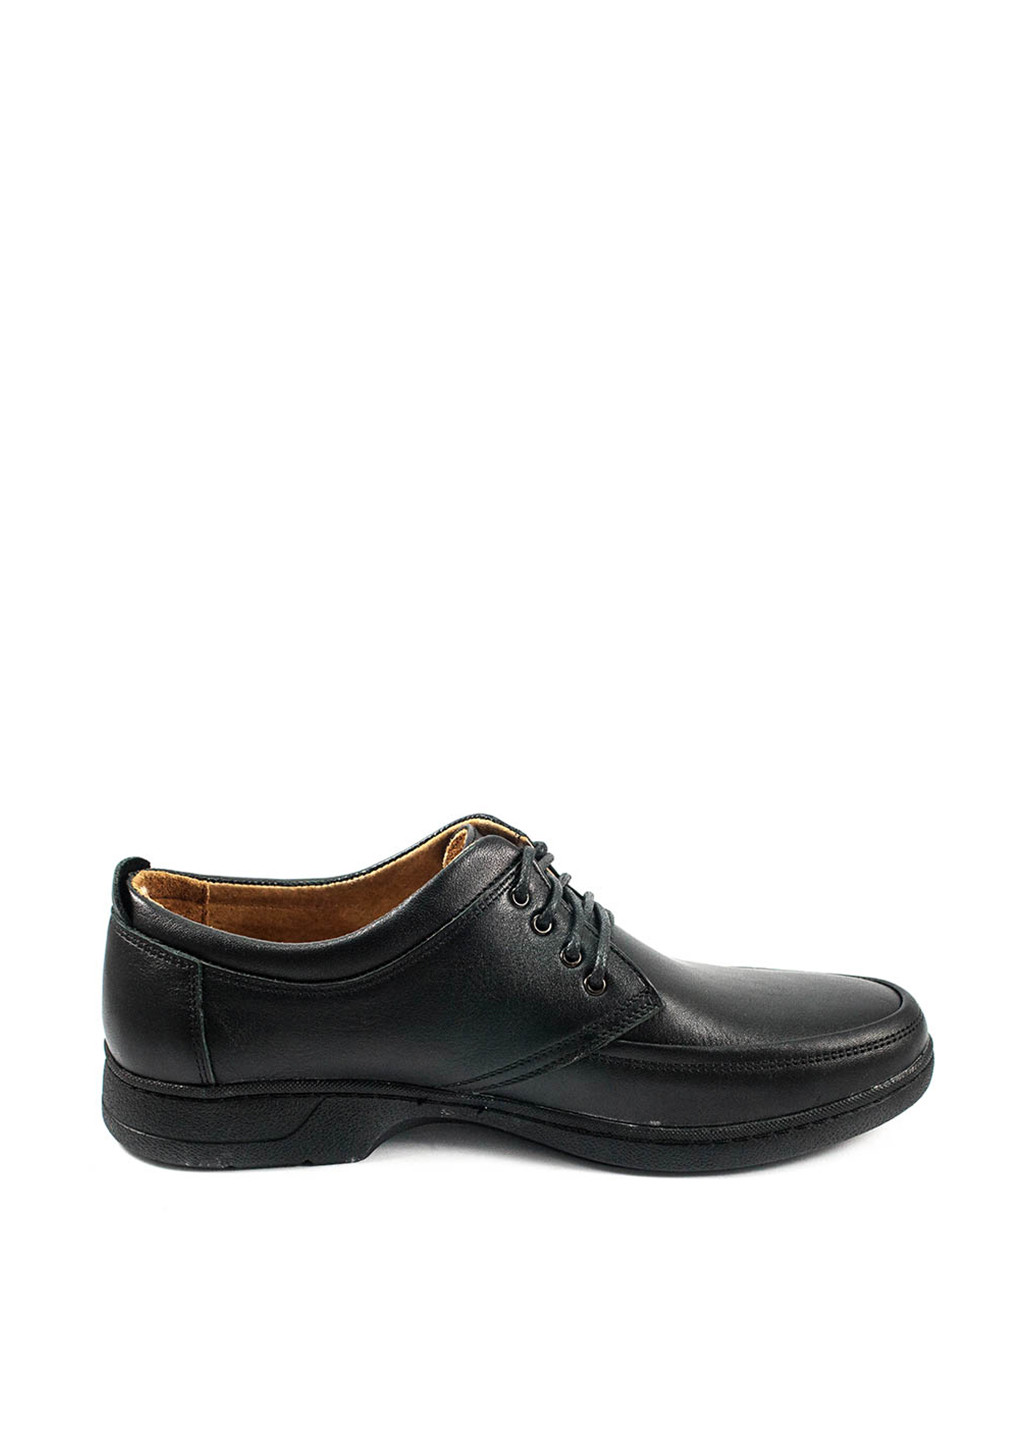 Черные классические туфли Bastion на шнурках